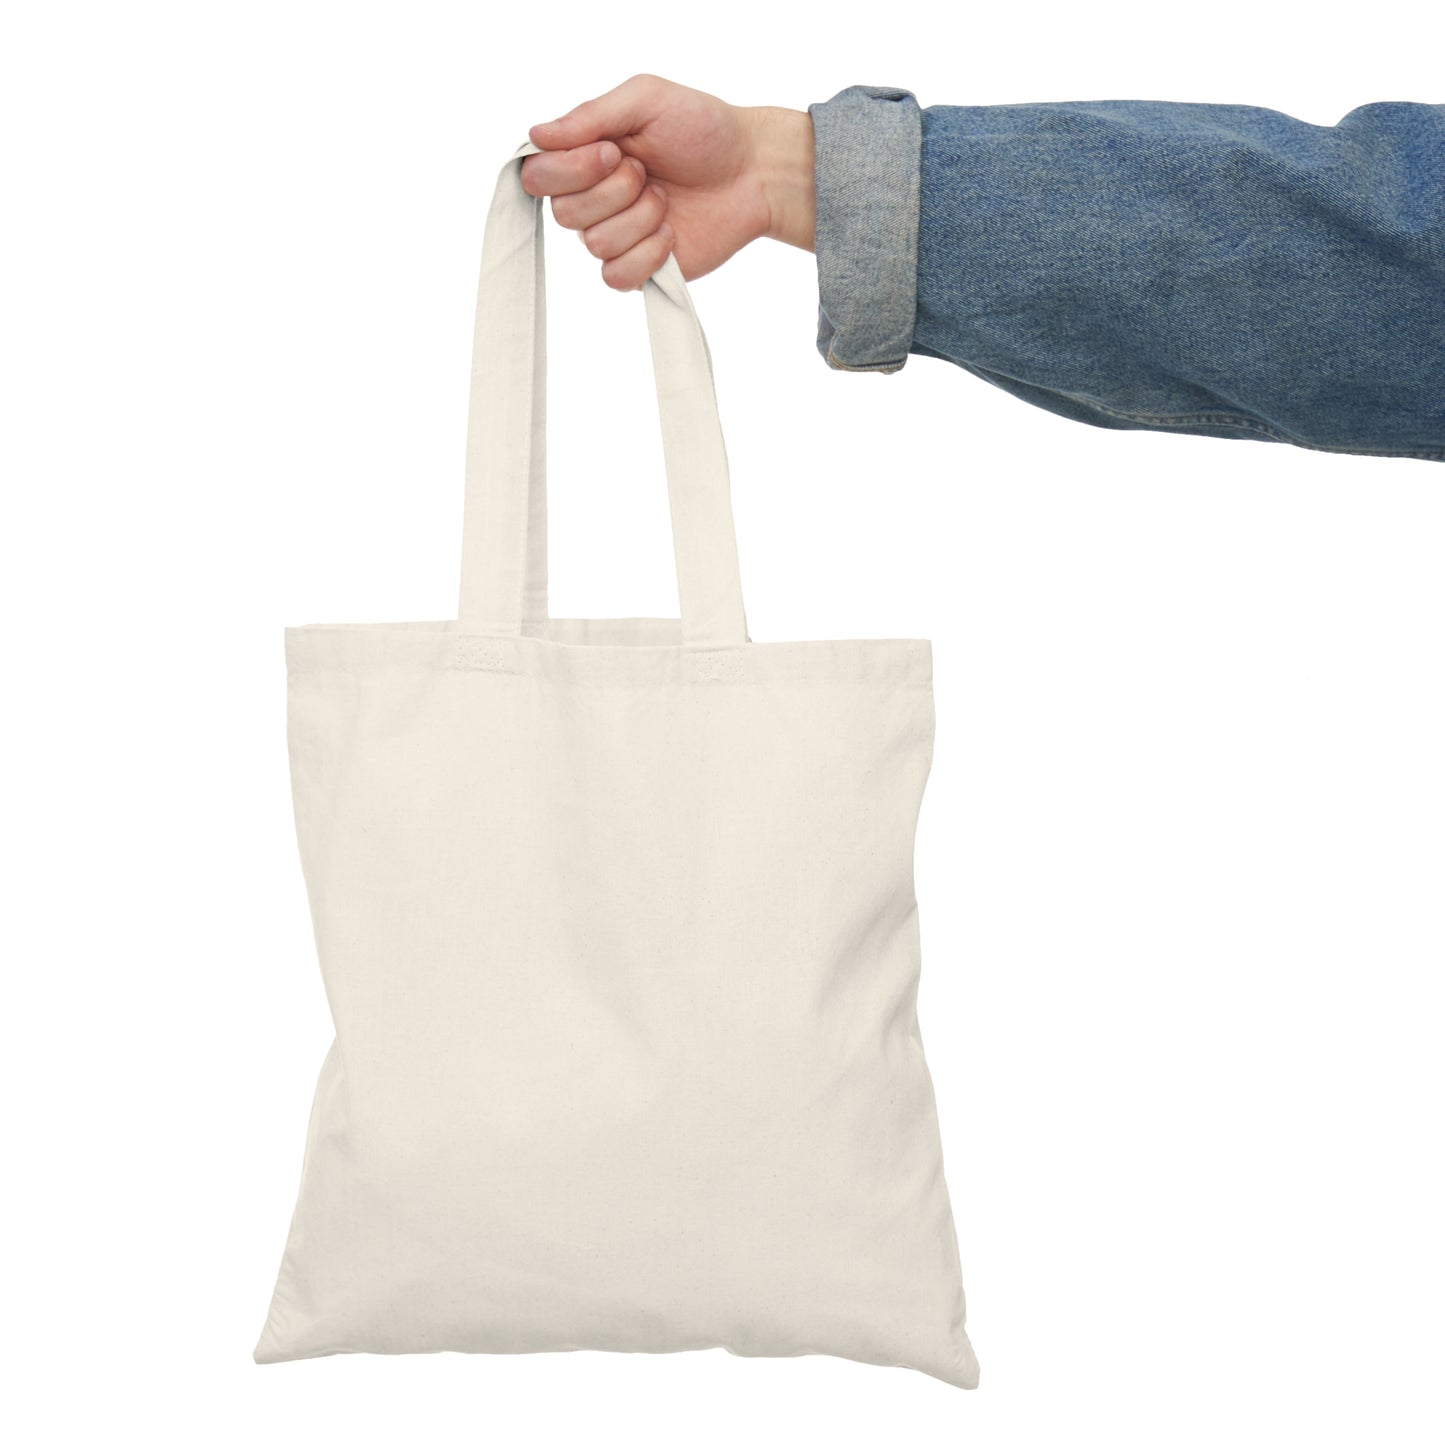 Partnerships* - Single Side Design Natural Tote Bag